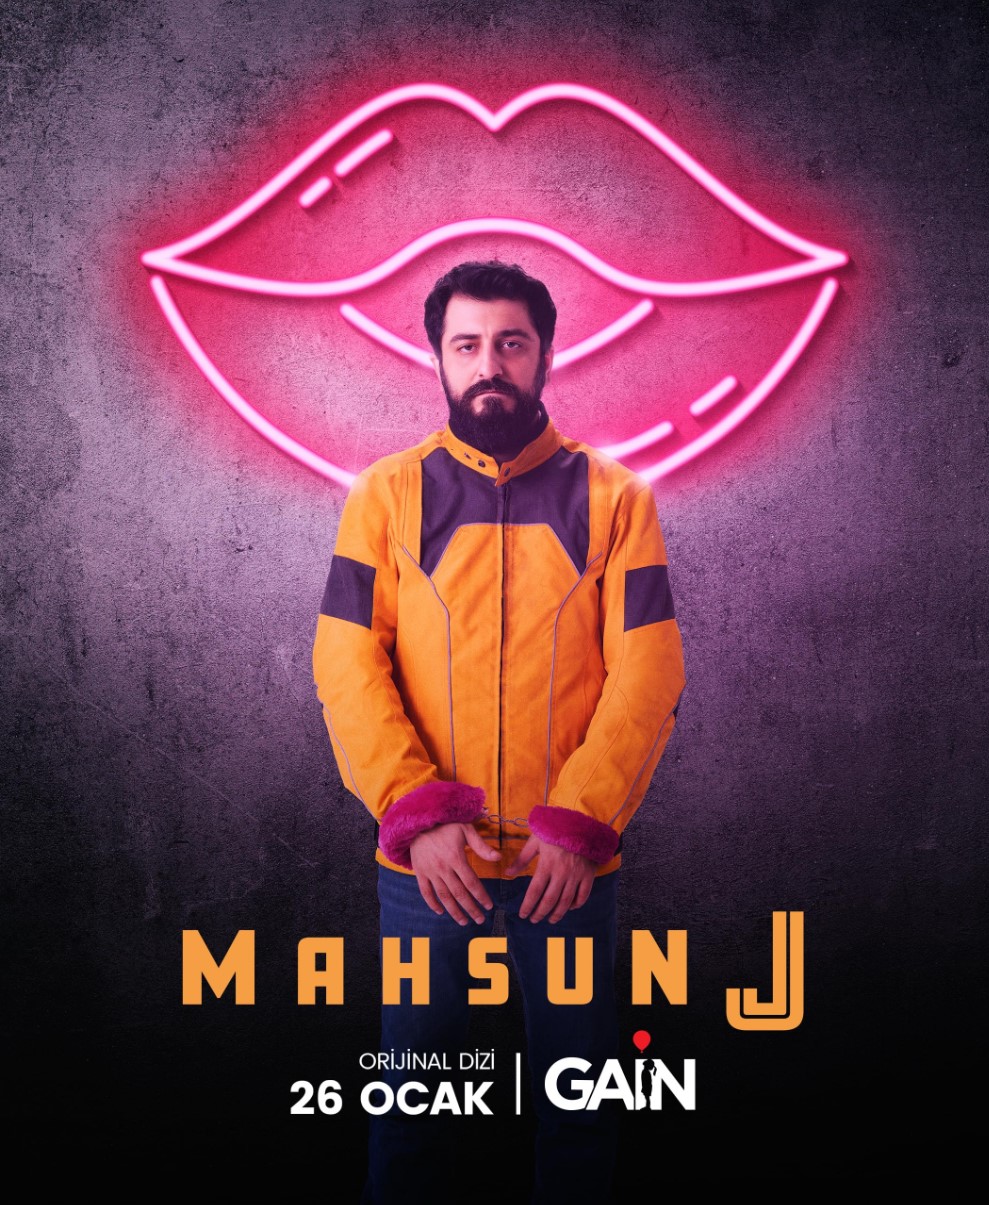 Mahsun J Poster